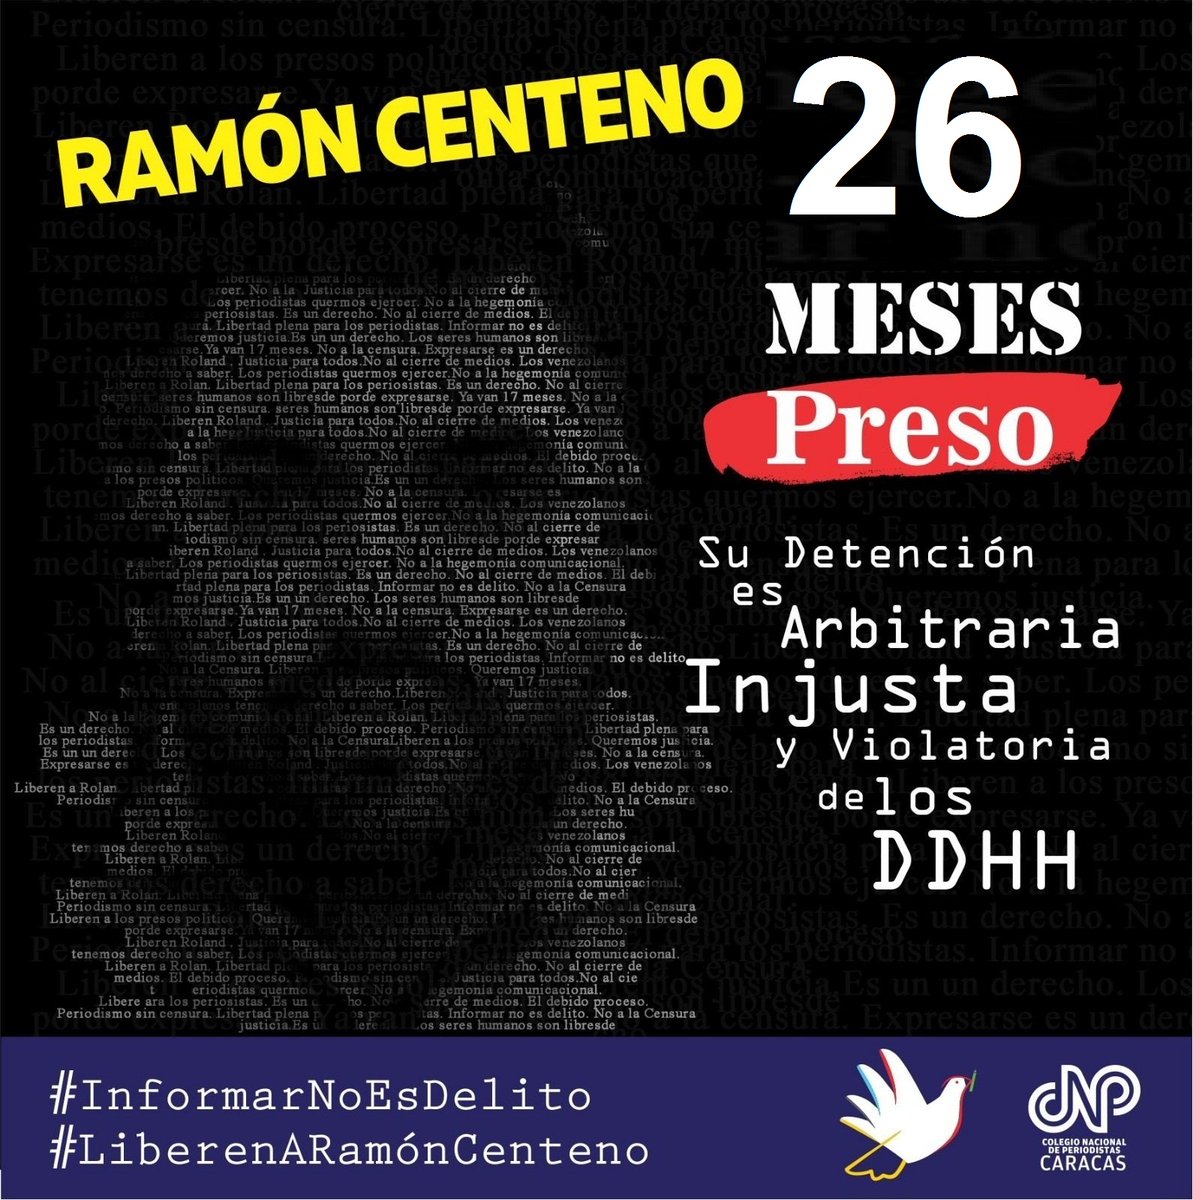 #17Abr 3:20 PM #PresosPolíticos 
@CNPCaracas: 'Inicia audiencia del juicio injusto  que se le sigue al colega  Ramón Centeno @elboligrafo2 ,quien lleva 26 meses preso injustamente.  #LiberenARamonCenteno'